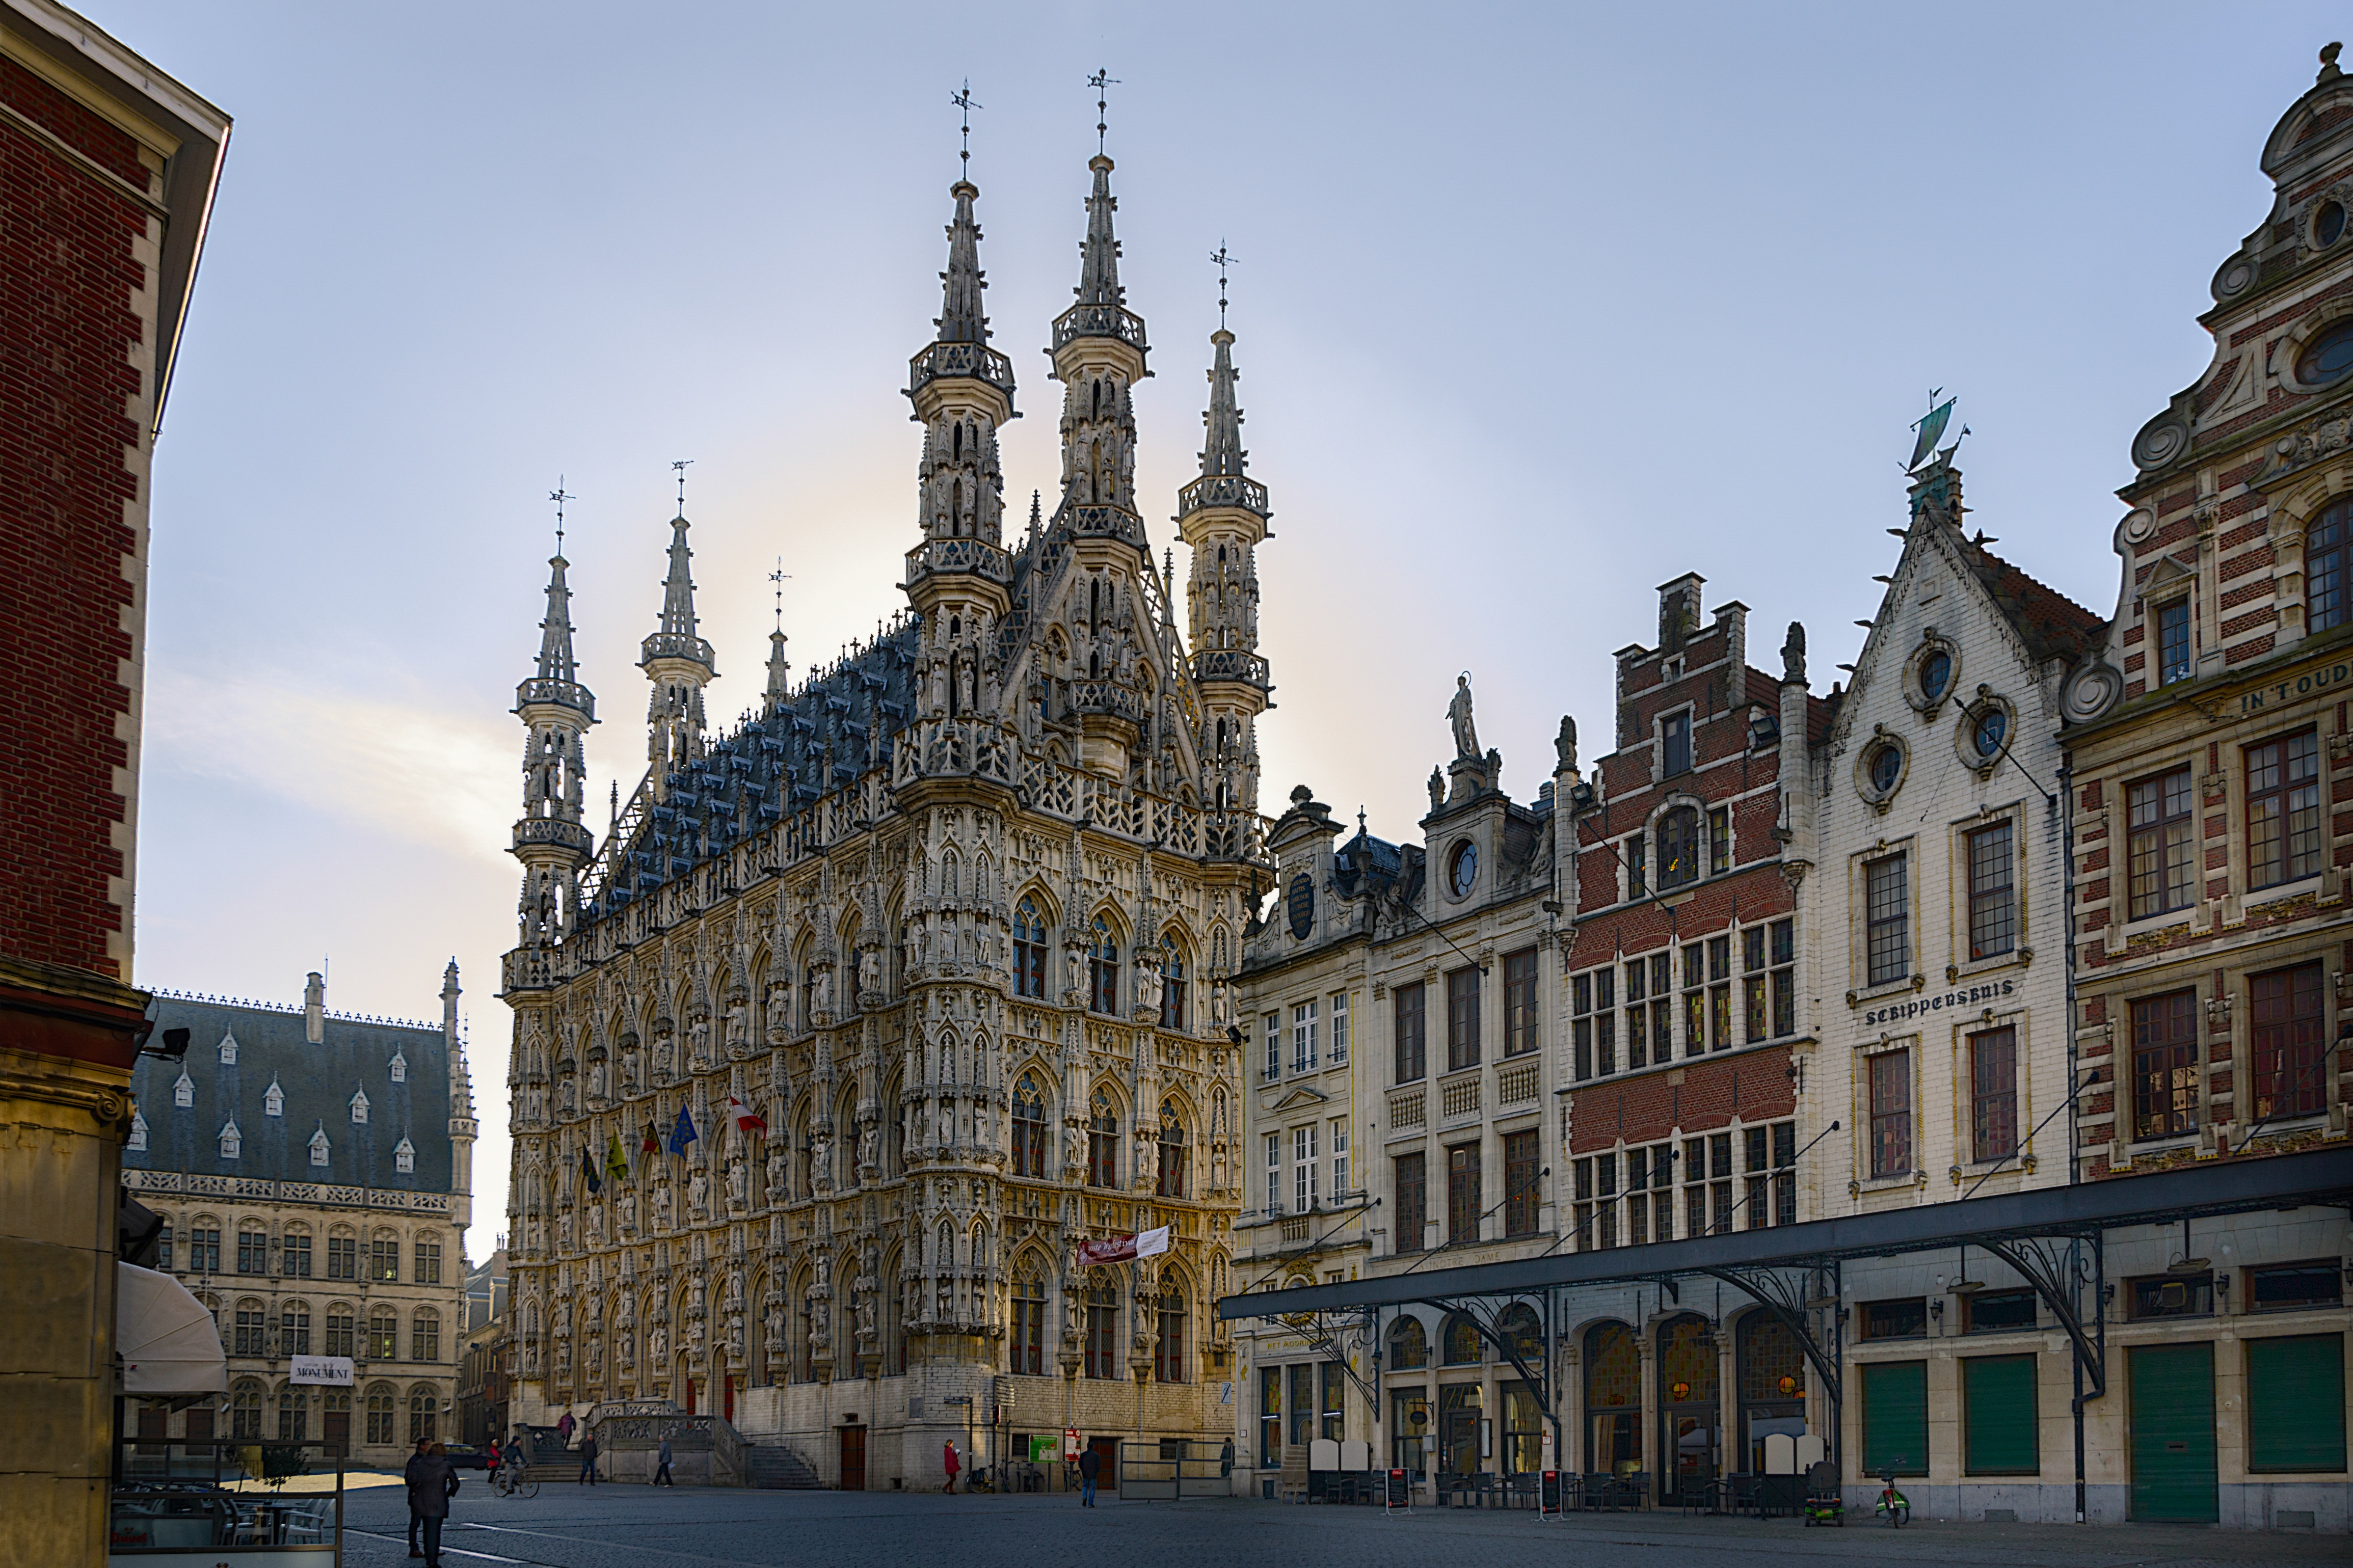 Leuven, Belgium